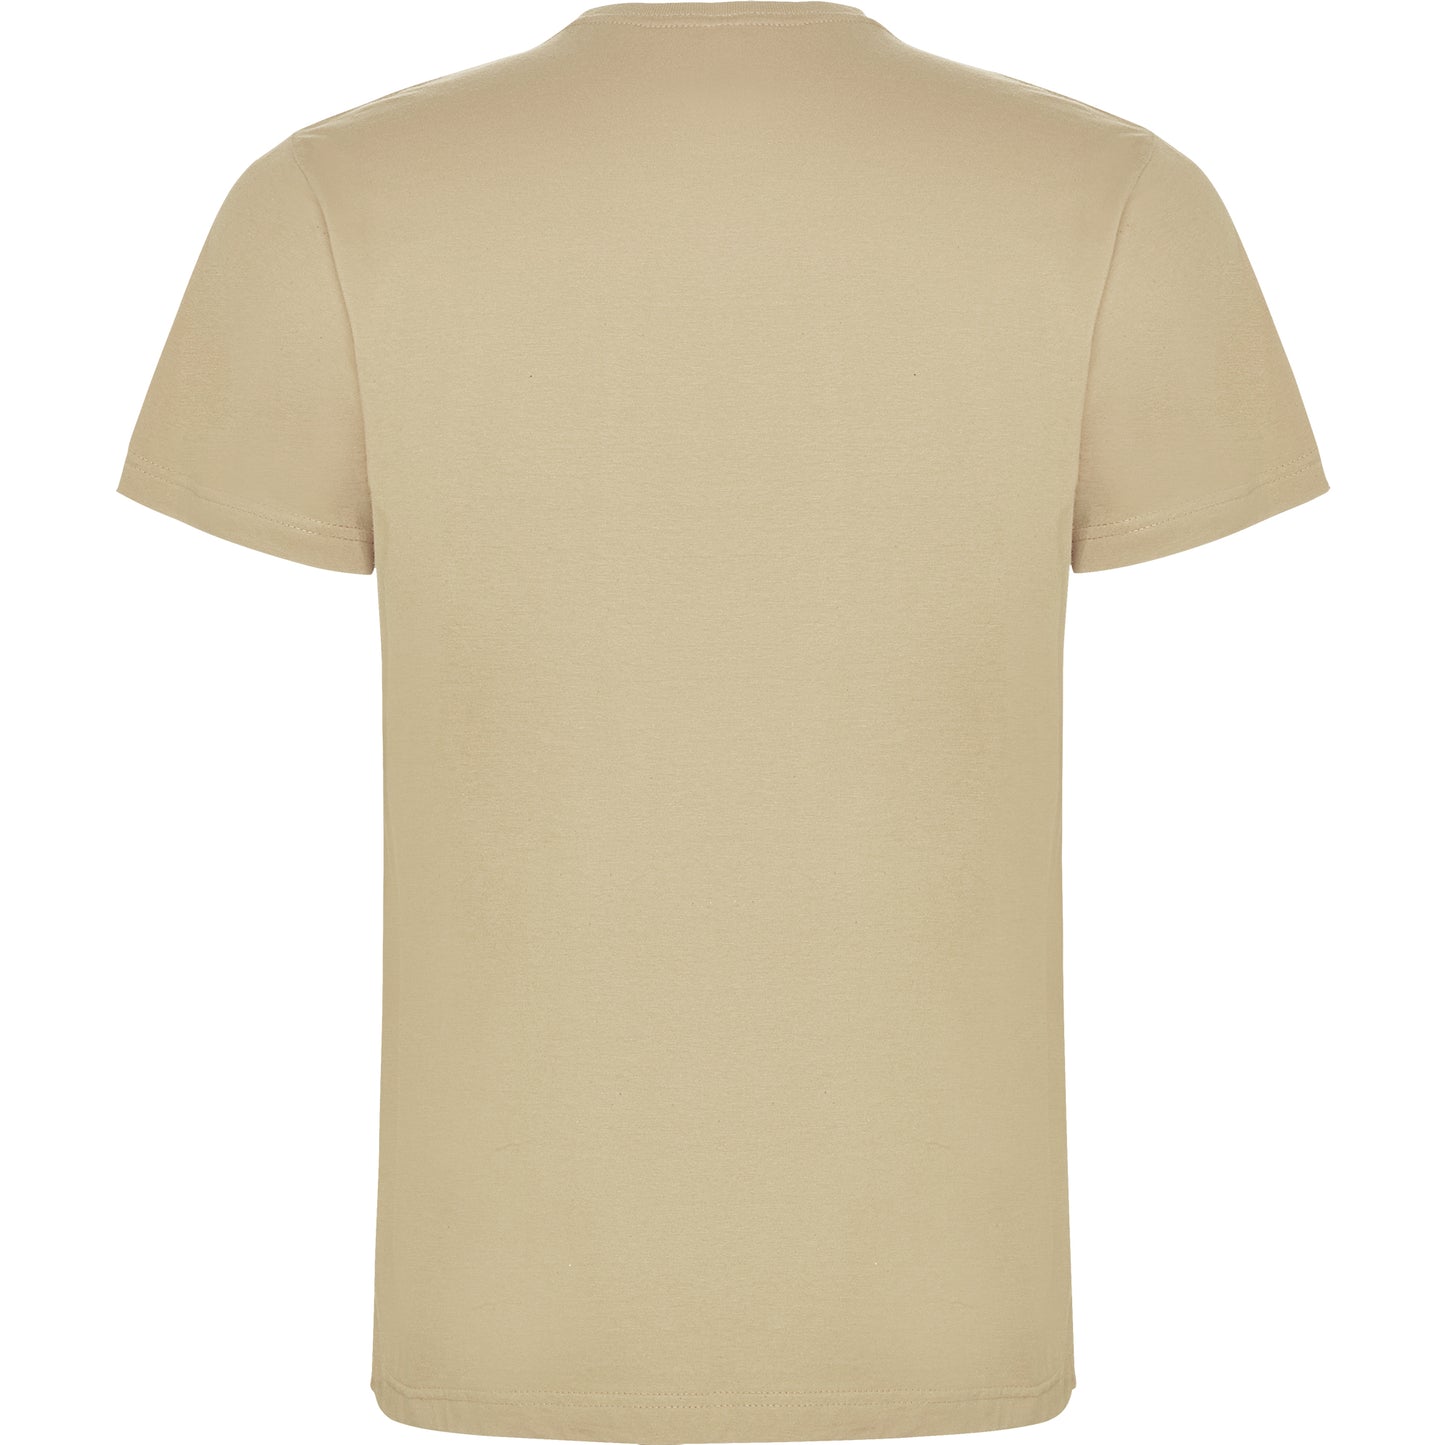 Dogo Premium T-shirt Sand